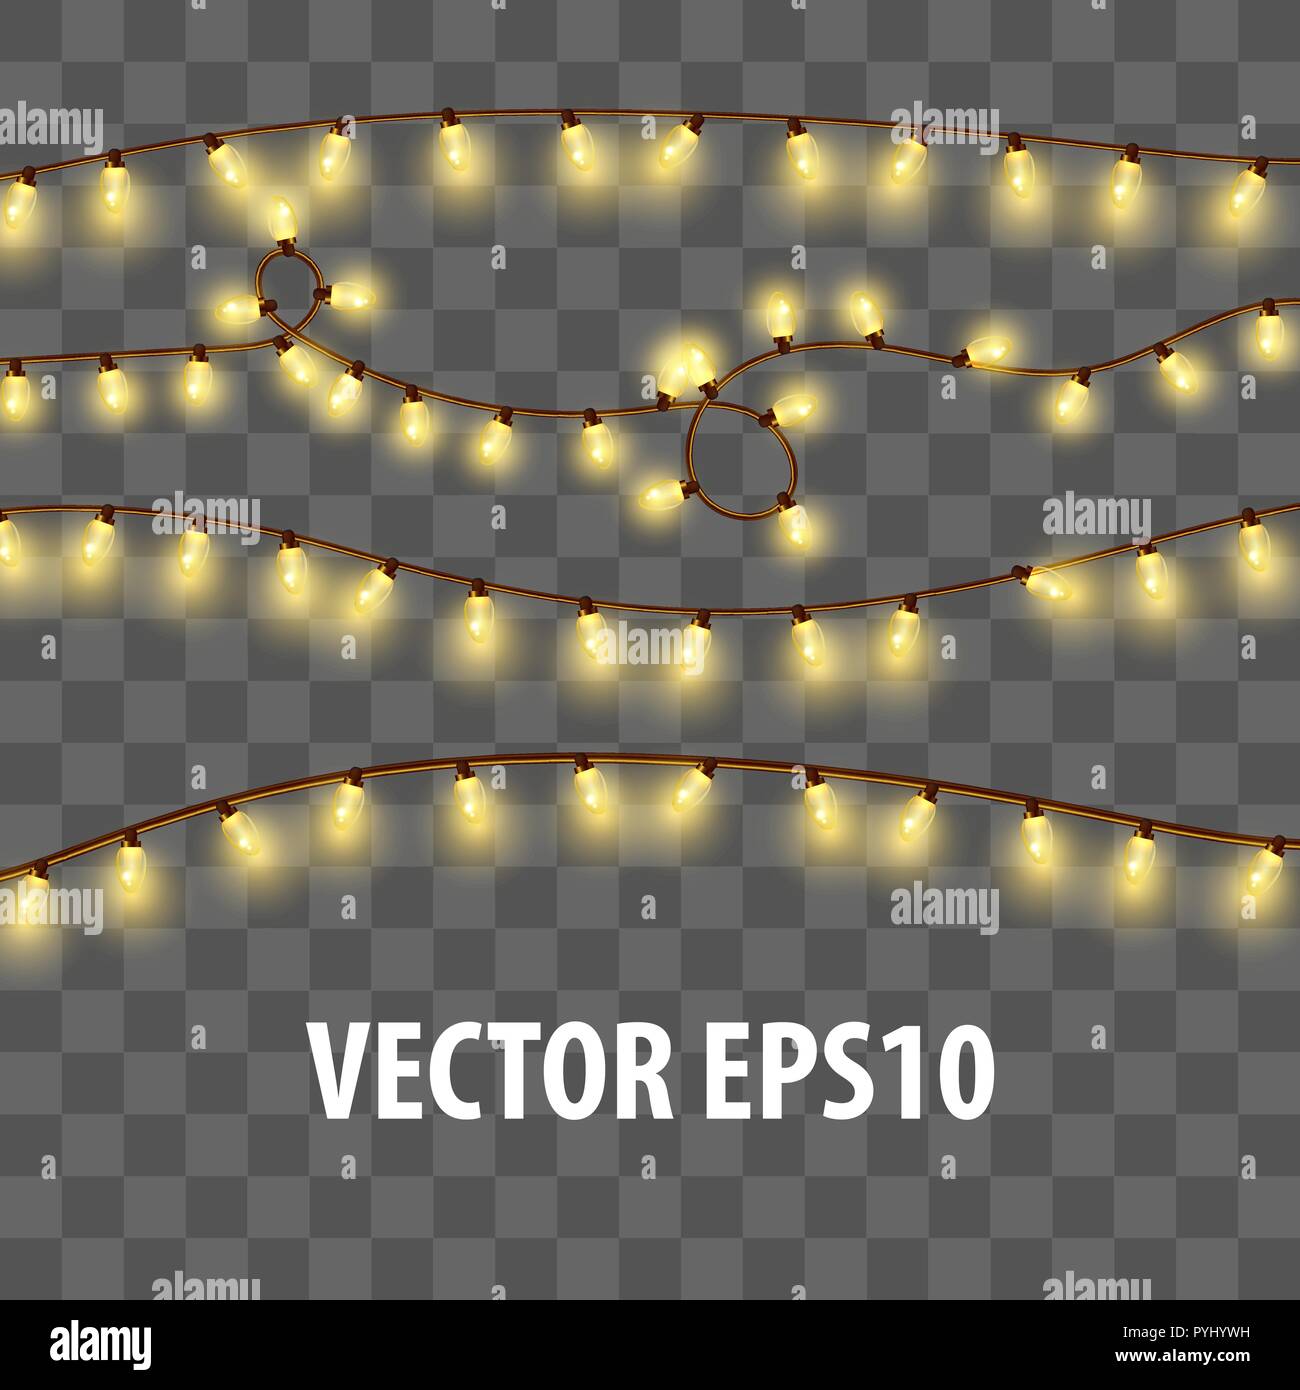 Weihnachten glänzend elektrisches Licht Girlande 3d realistische Stock Vektor